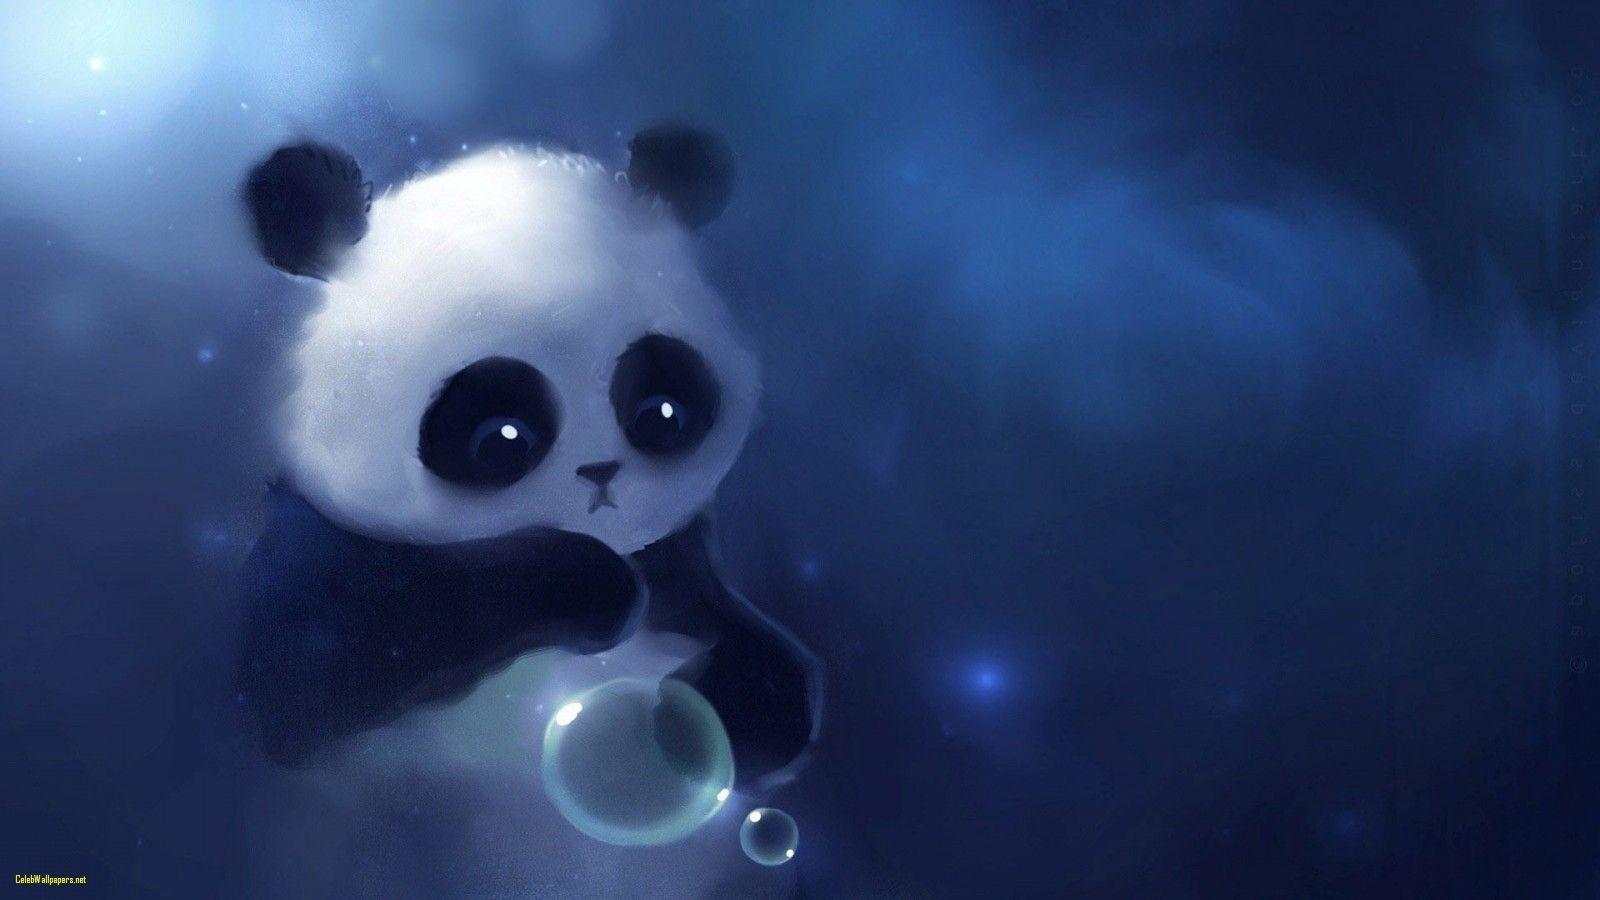 Cute Wallpaper Tumblr Elegant Free Download Cute Panda Wallpaper